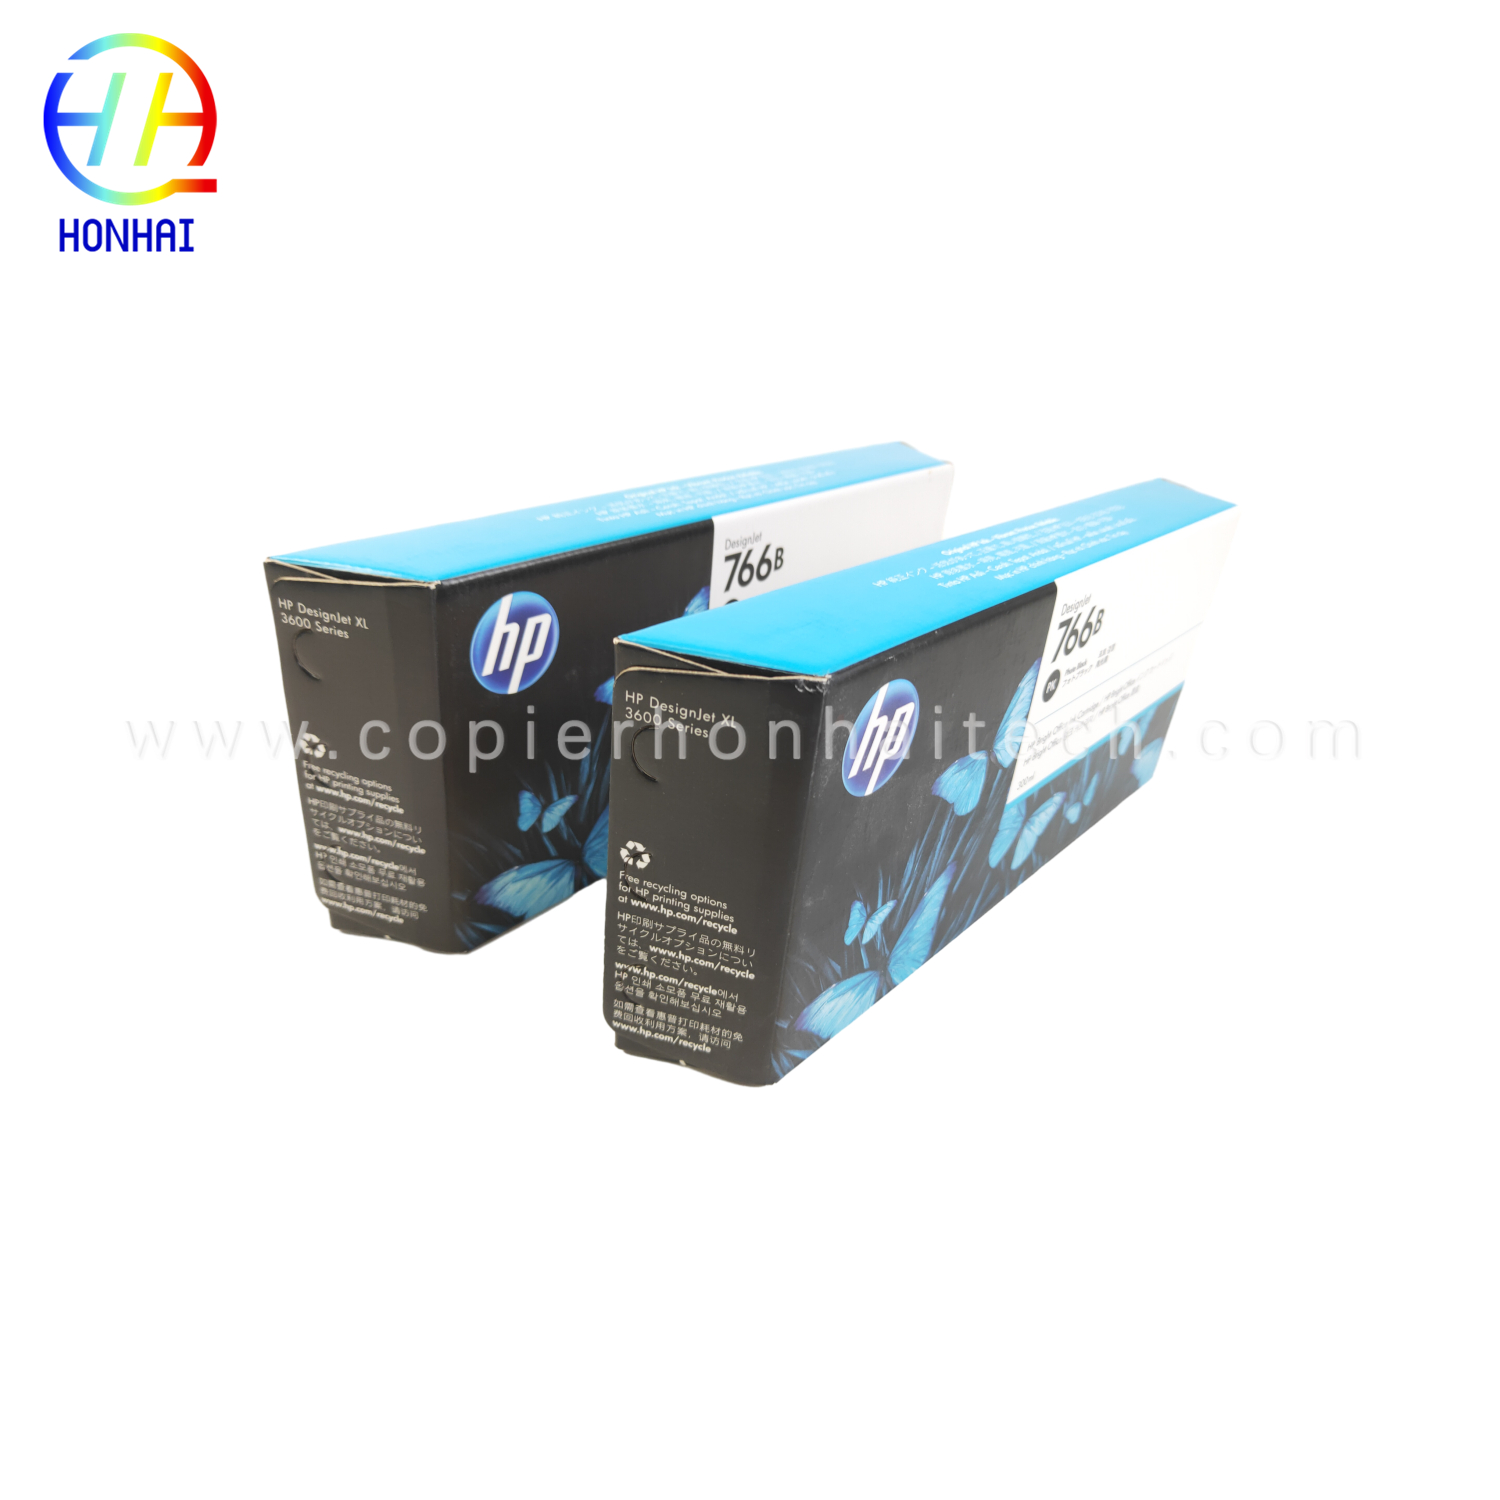 https://www.copierhonhaitech.com/origen-ink-cartridge-for-hp-designjet-xl-3600-766-300-ml-matte-black-p2v92a-product/